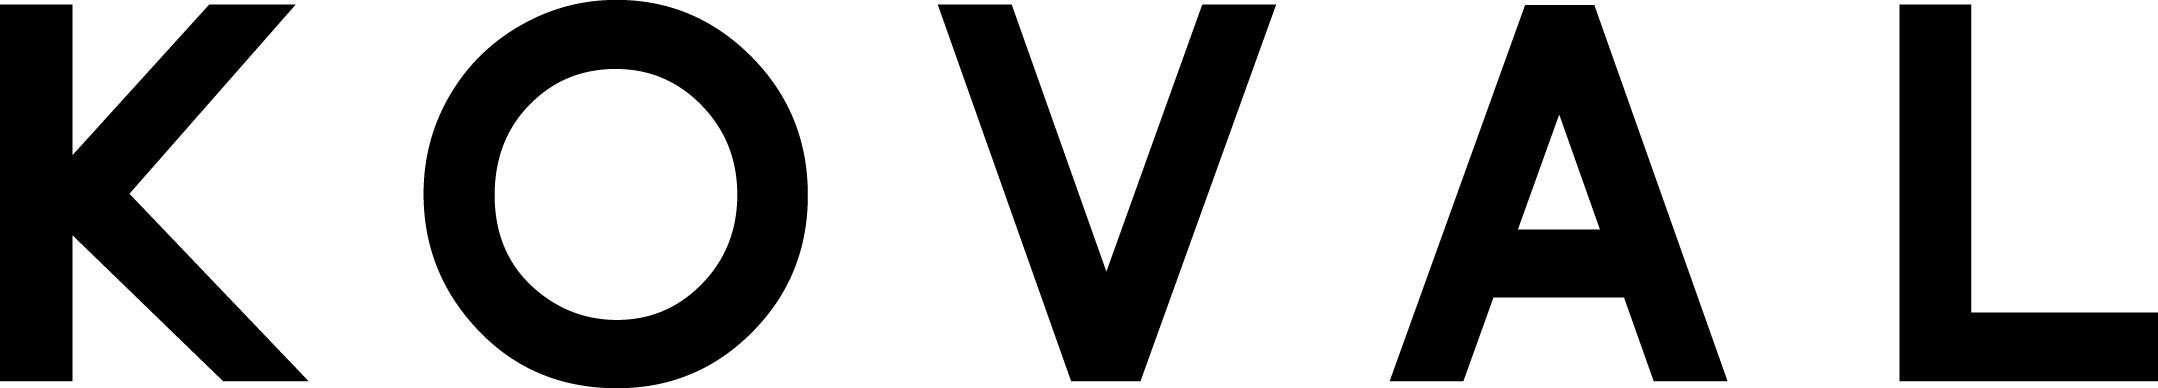 Koval logo